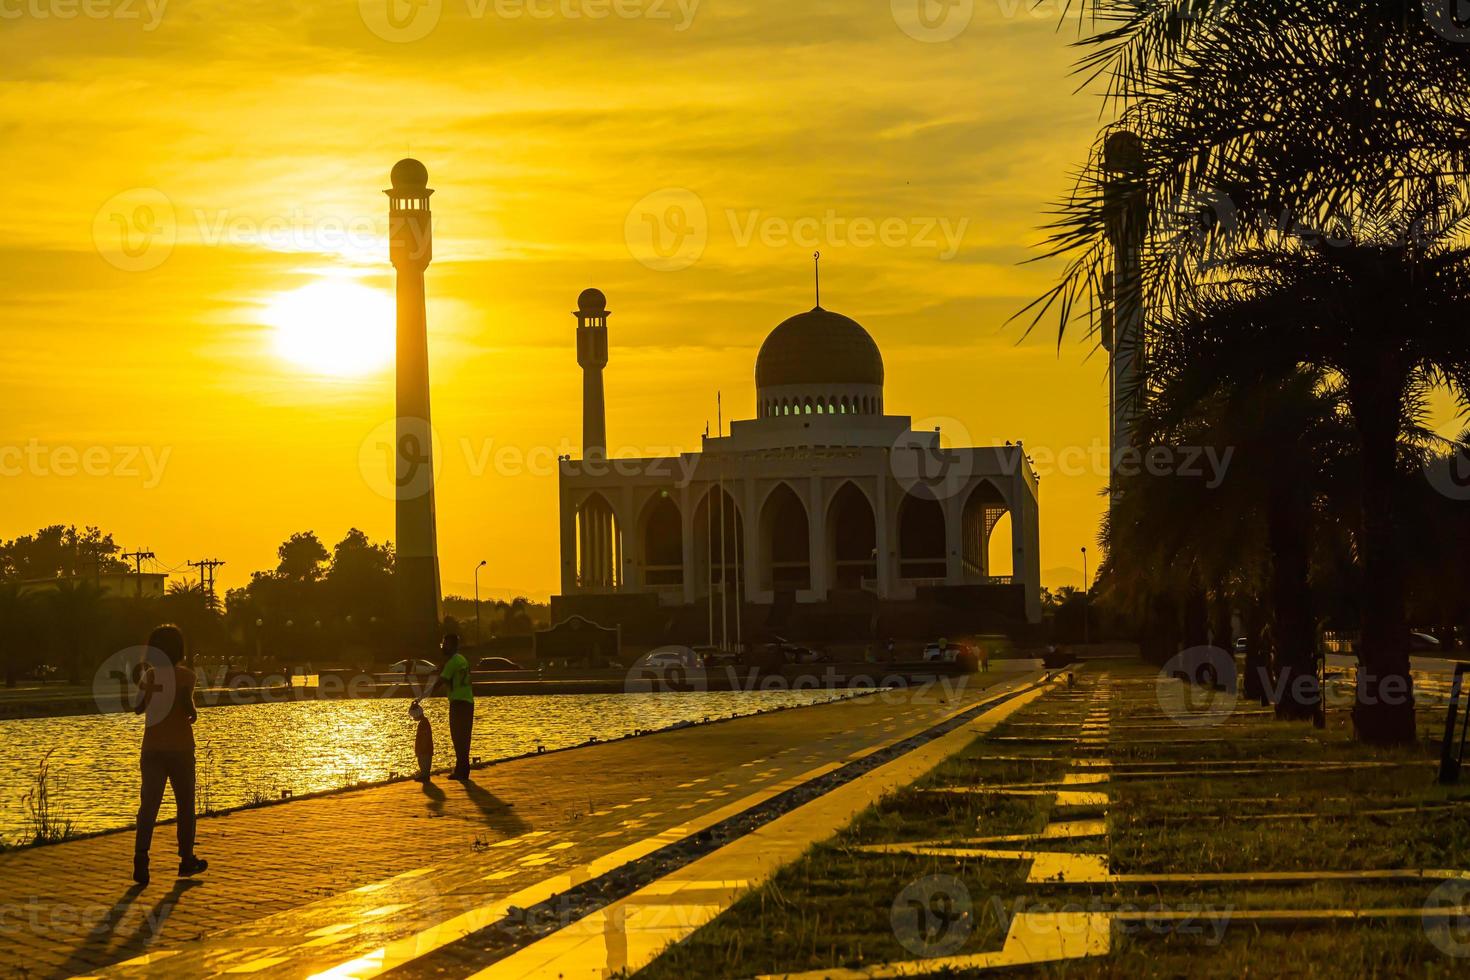 songkhla centrale moskee in dag naar nacht met kleurrijke luchten bij zonsondergang en de lichten van de moskee en reflecties in het water in het landschapsconcept van een oriëntatiepunt foto